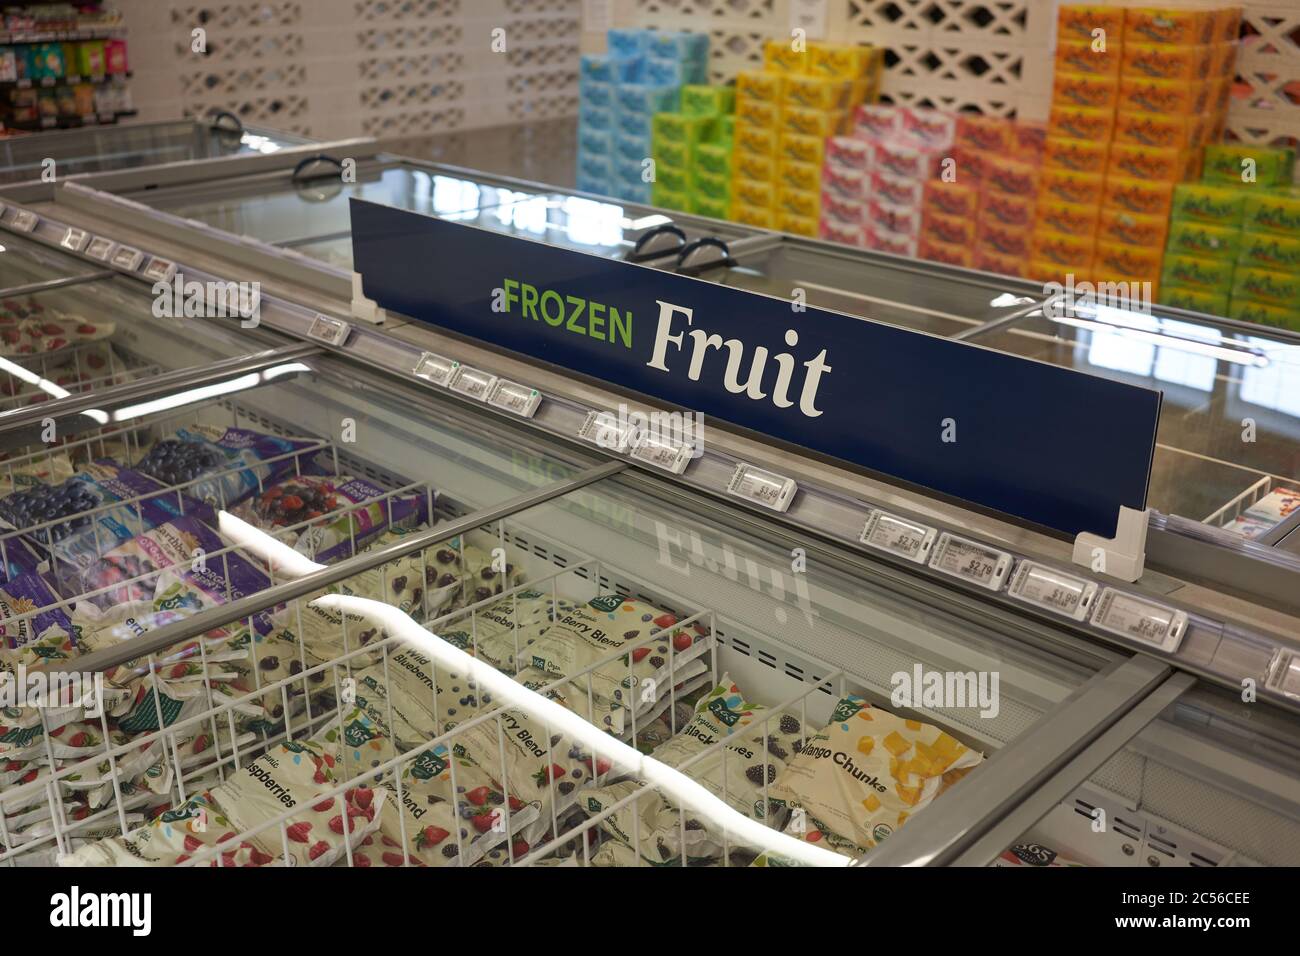 Frozen fruit in a freezer in a Whole Foods Market 365 supermarket in Lake Oswego, Oregon, seen on June 30, 2020. Stock Photo